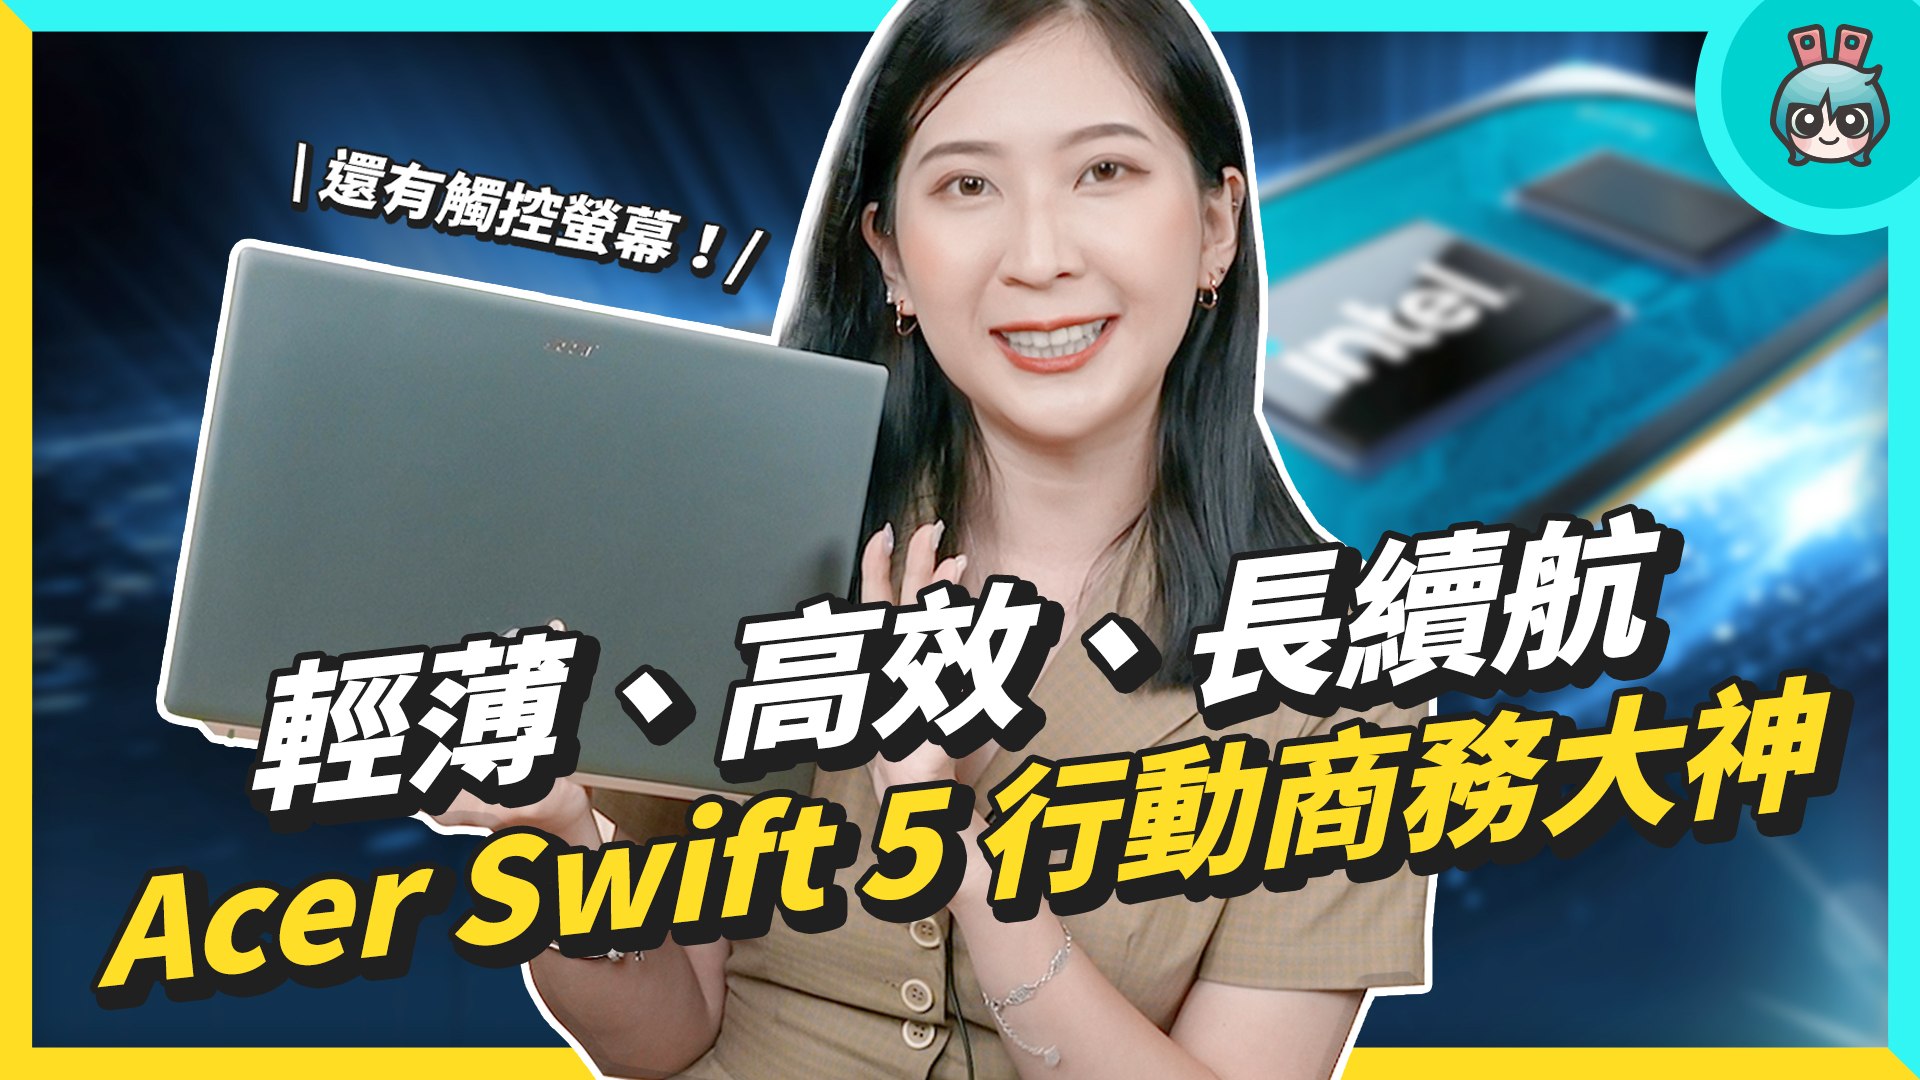 ⁣行動商務終極筆電！Acer Swift 5 輕薄型筆電 竟可以修圖、剪片！？